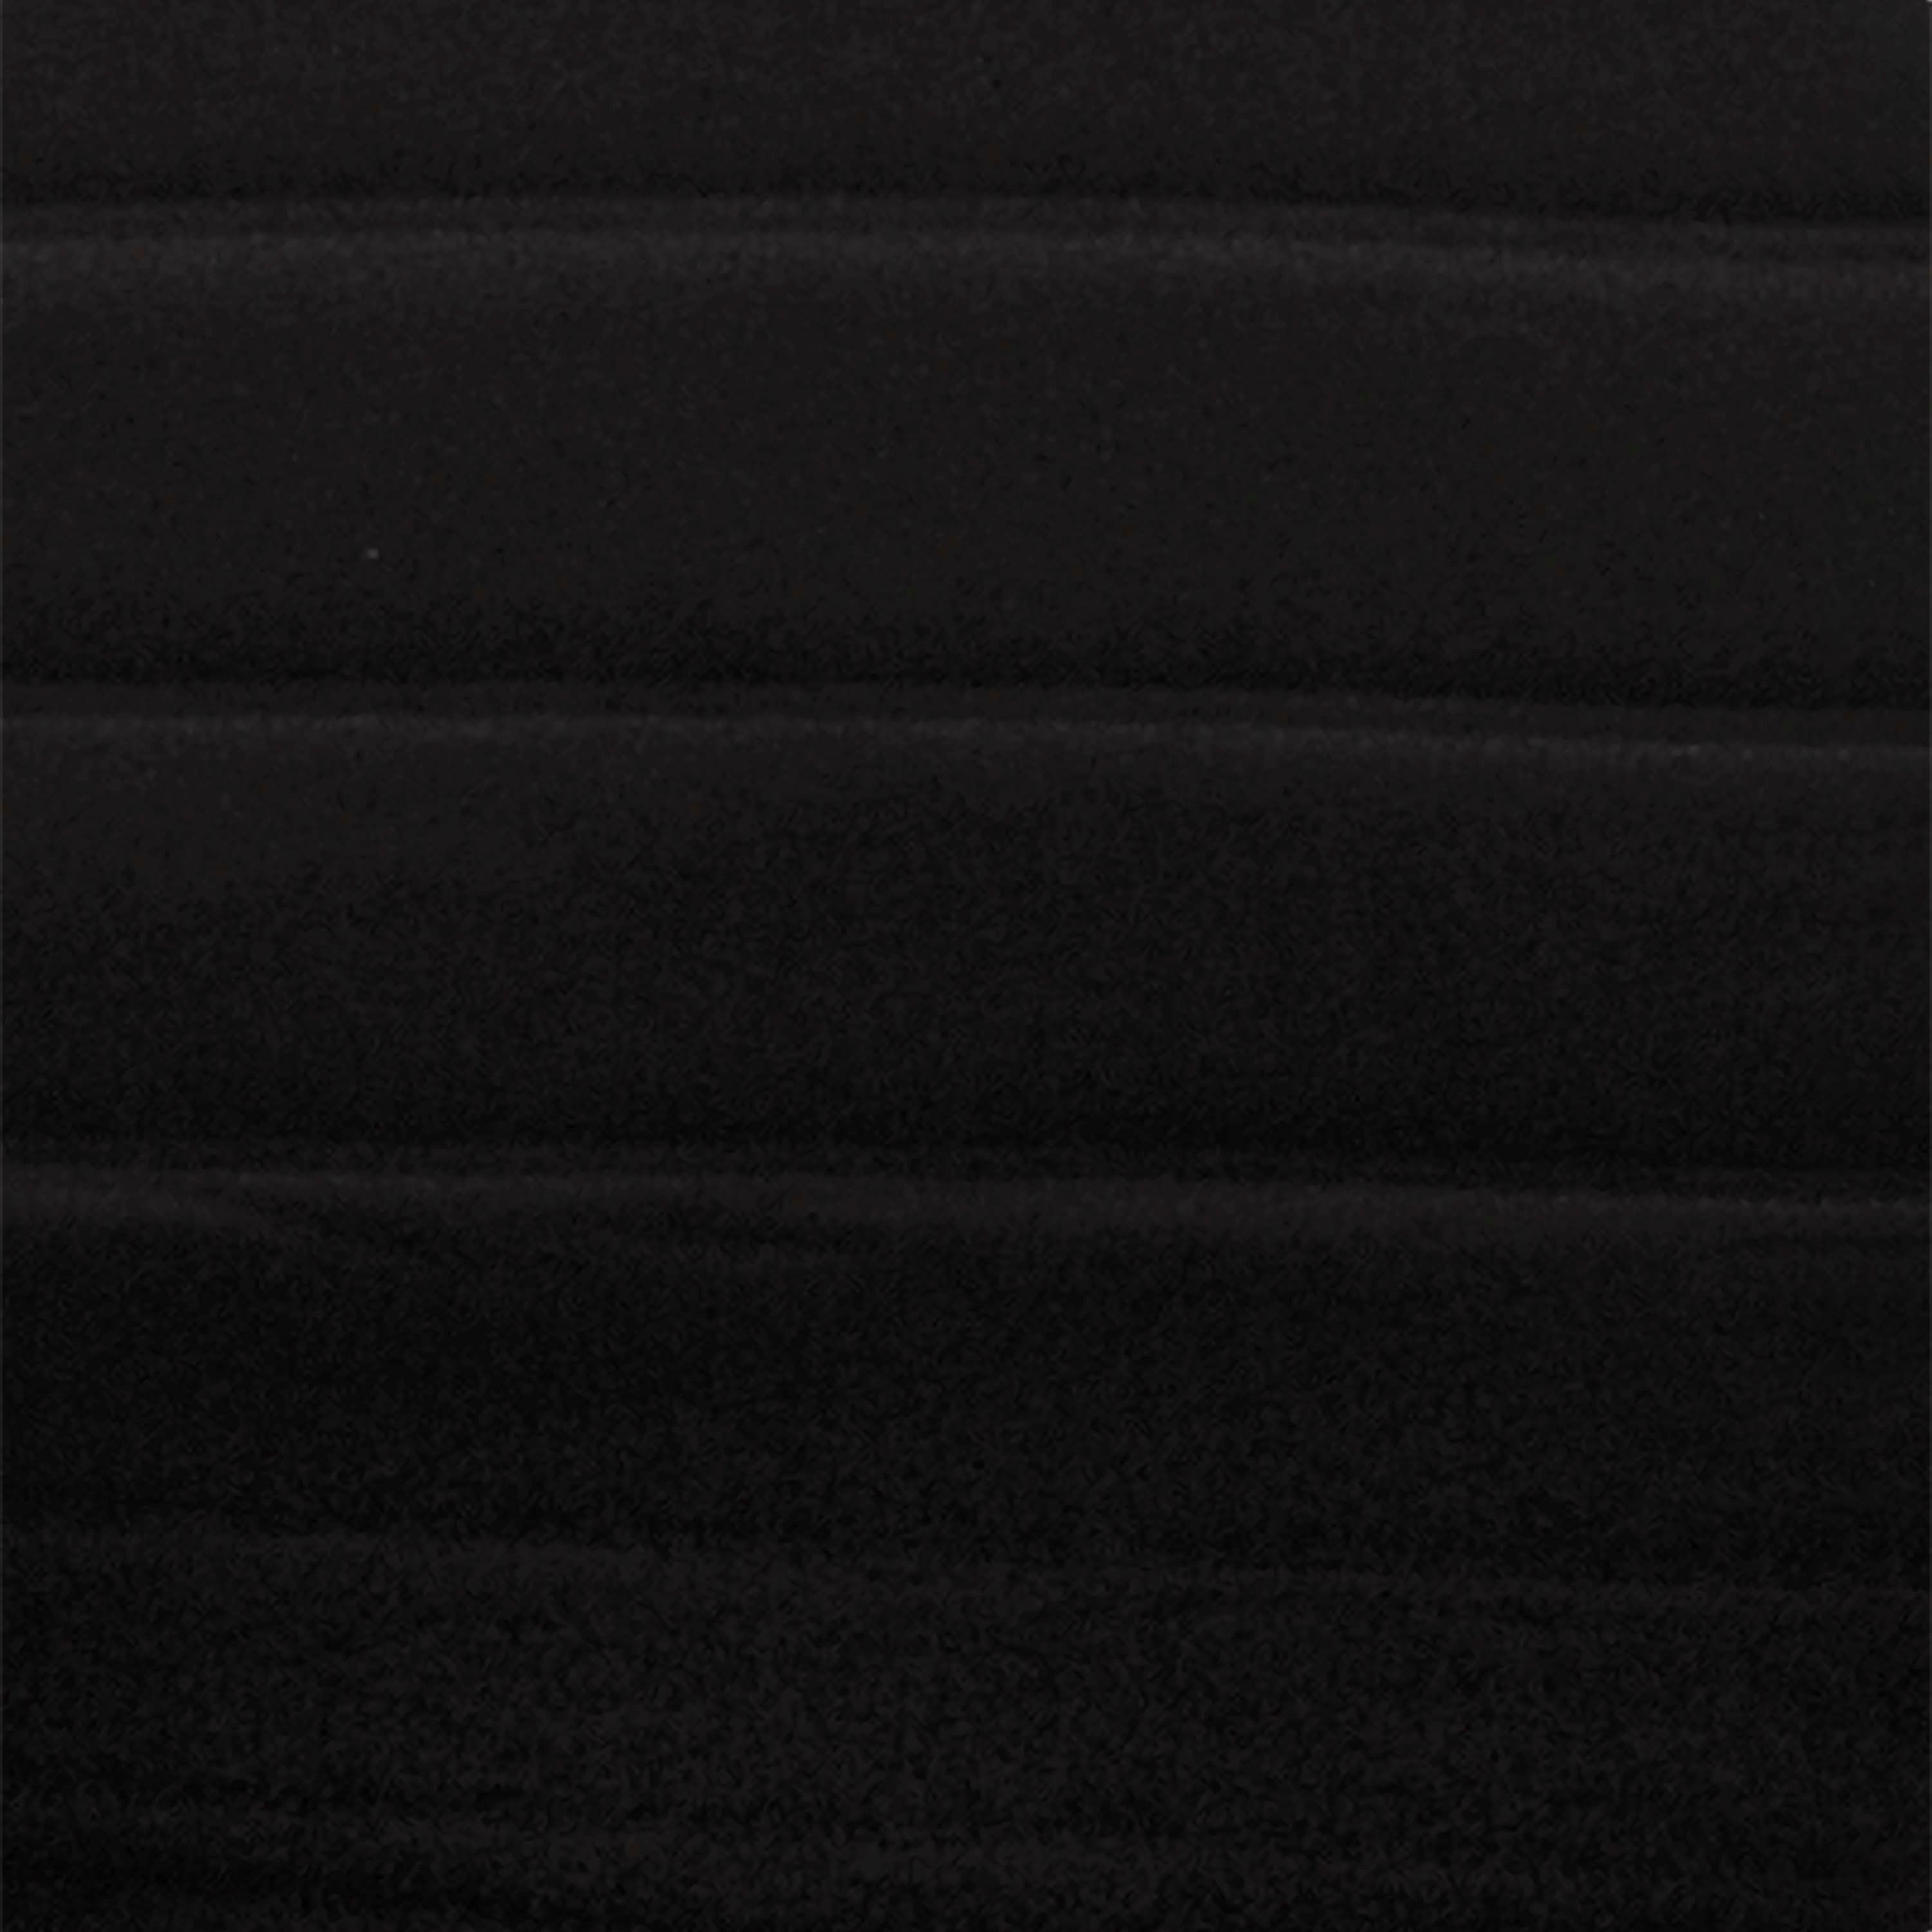 Petex Autositzbezug 11-tlg Set SAB für mit/ohne 1 universelle Geeignet Seitenairbag, Vario Sports" Passform, Fahrzeuge schwarz "Active